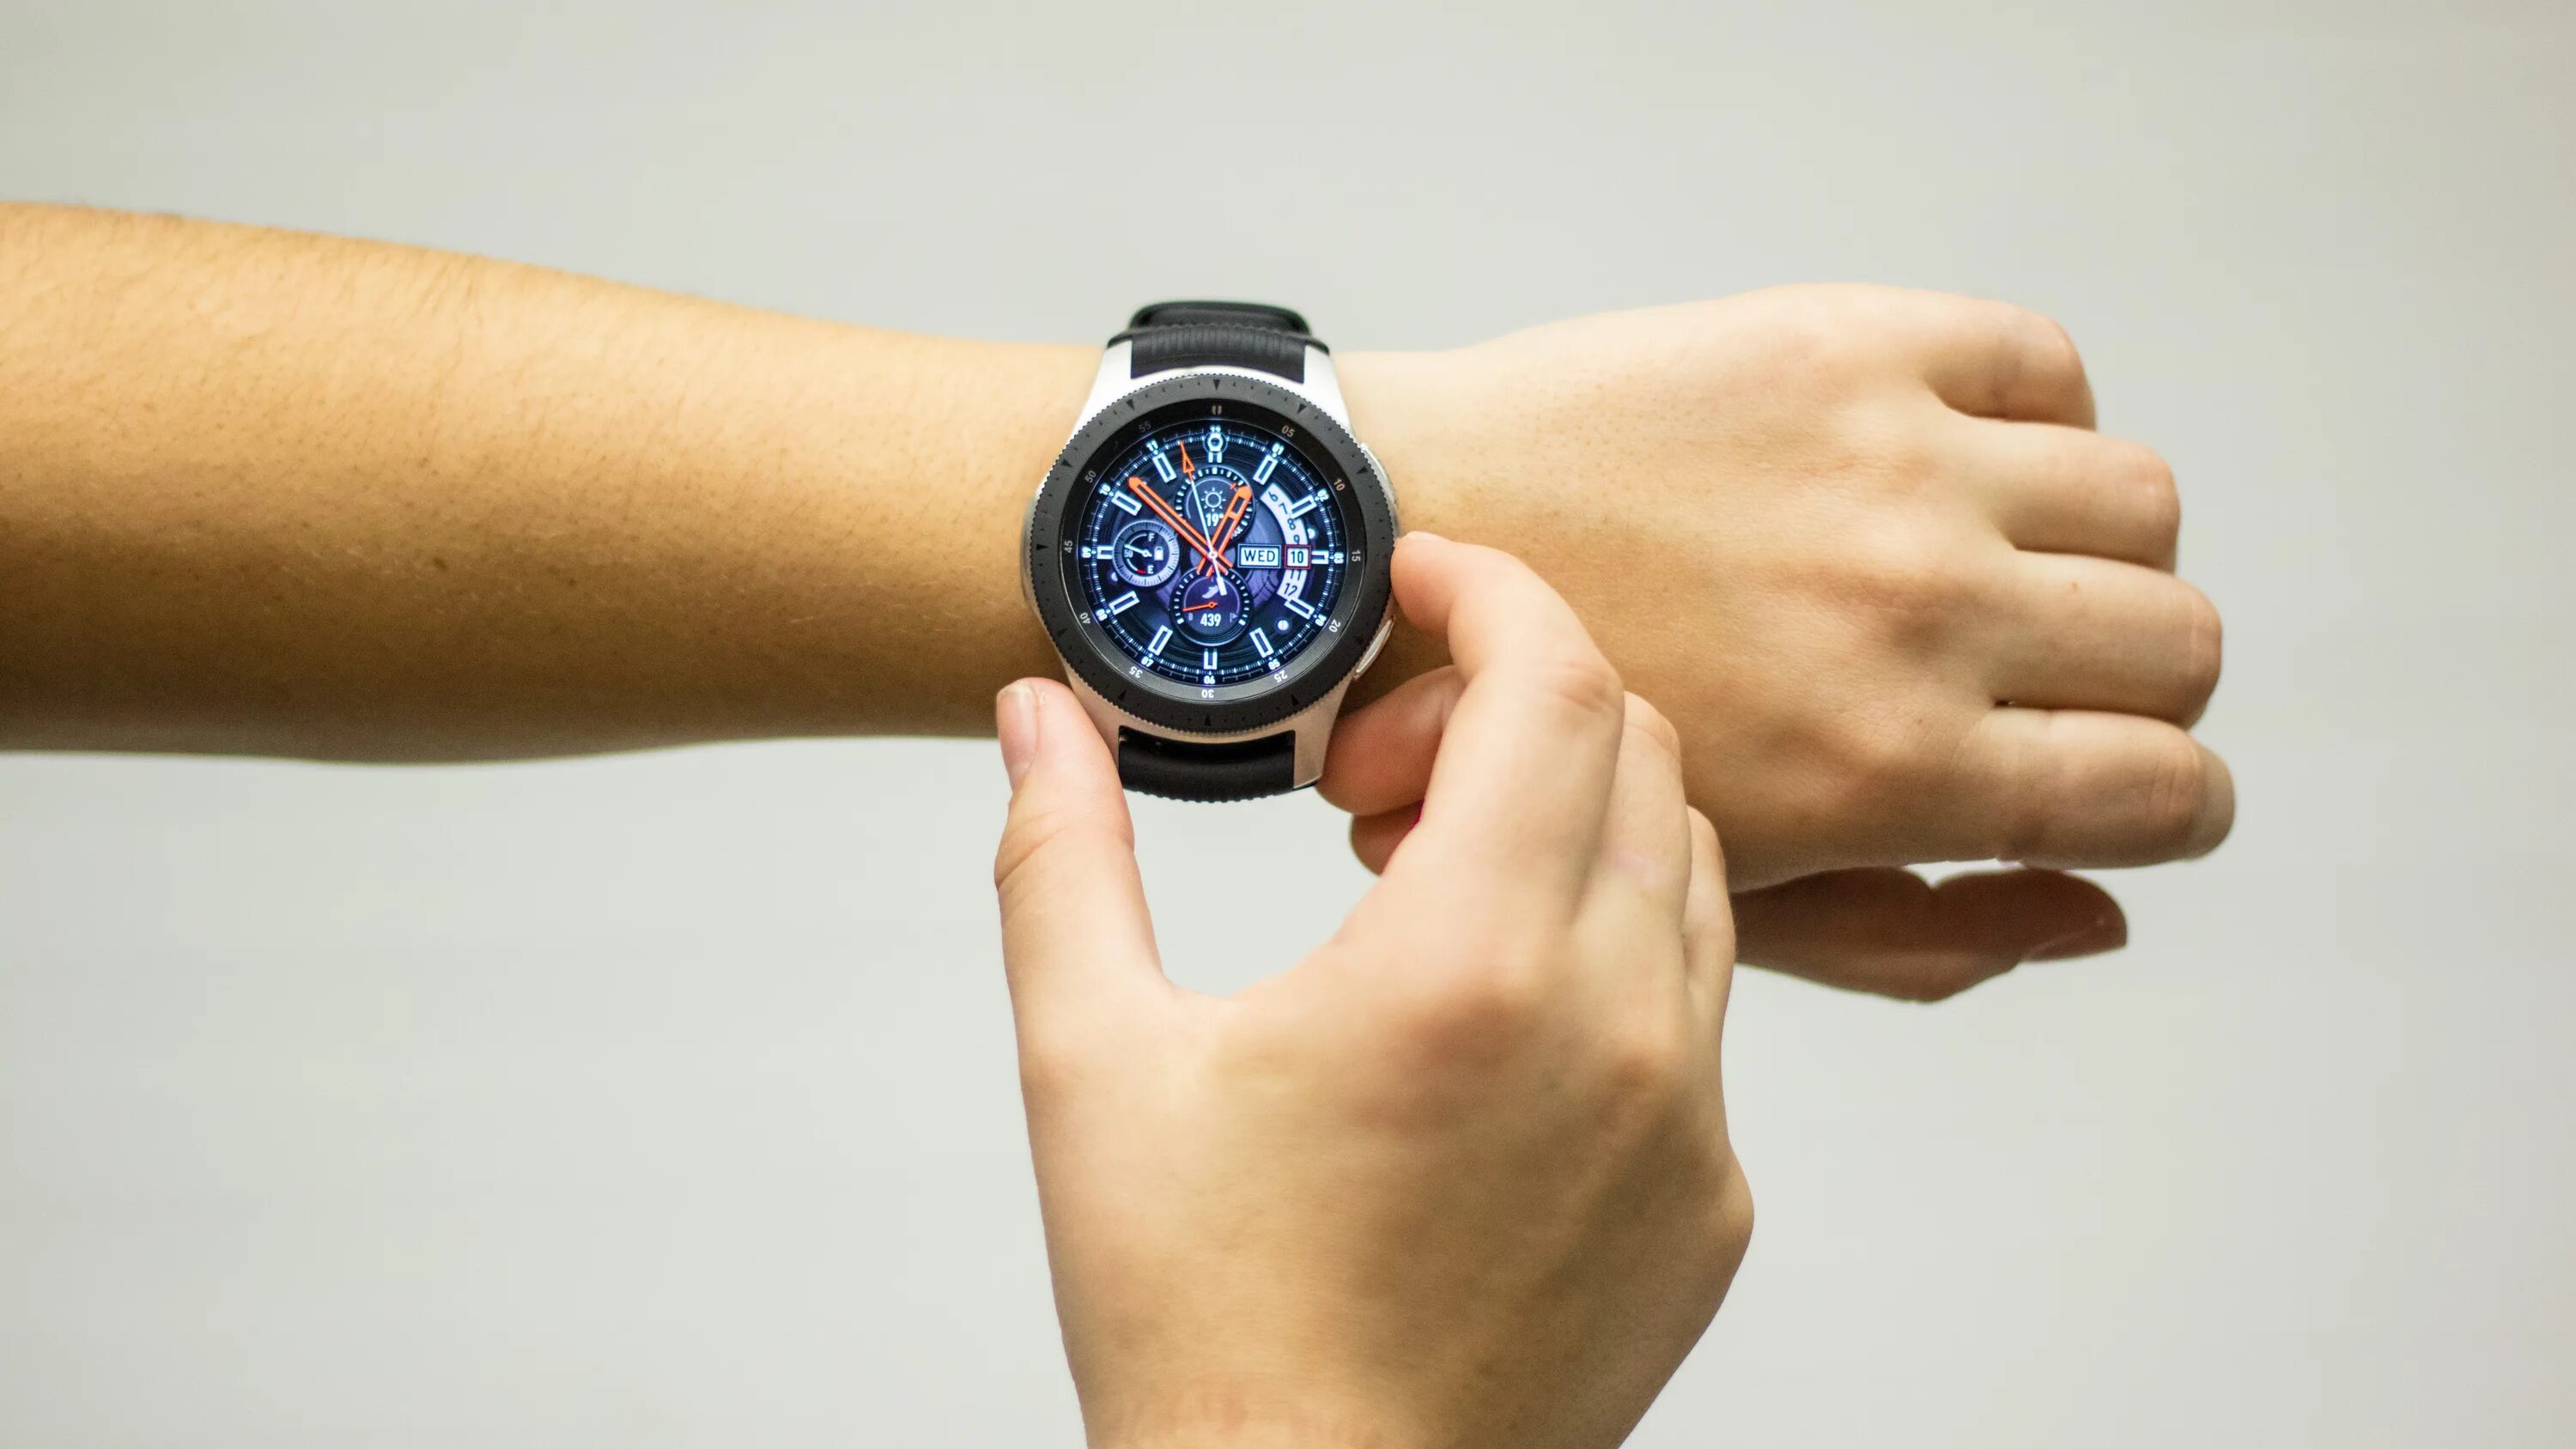 Samsung Galaxy watch 4 46. Samsung Galaxy watch 4 46mm. Samsung Galaxy watch 46мм. Galaxy watch 4 Classic 46 мм. Часы самсунг galaxy watch обзор